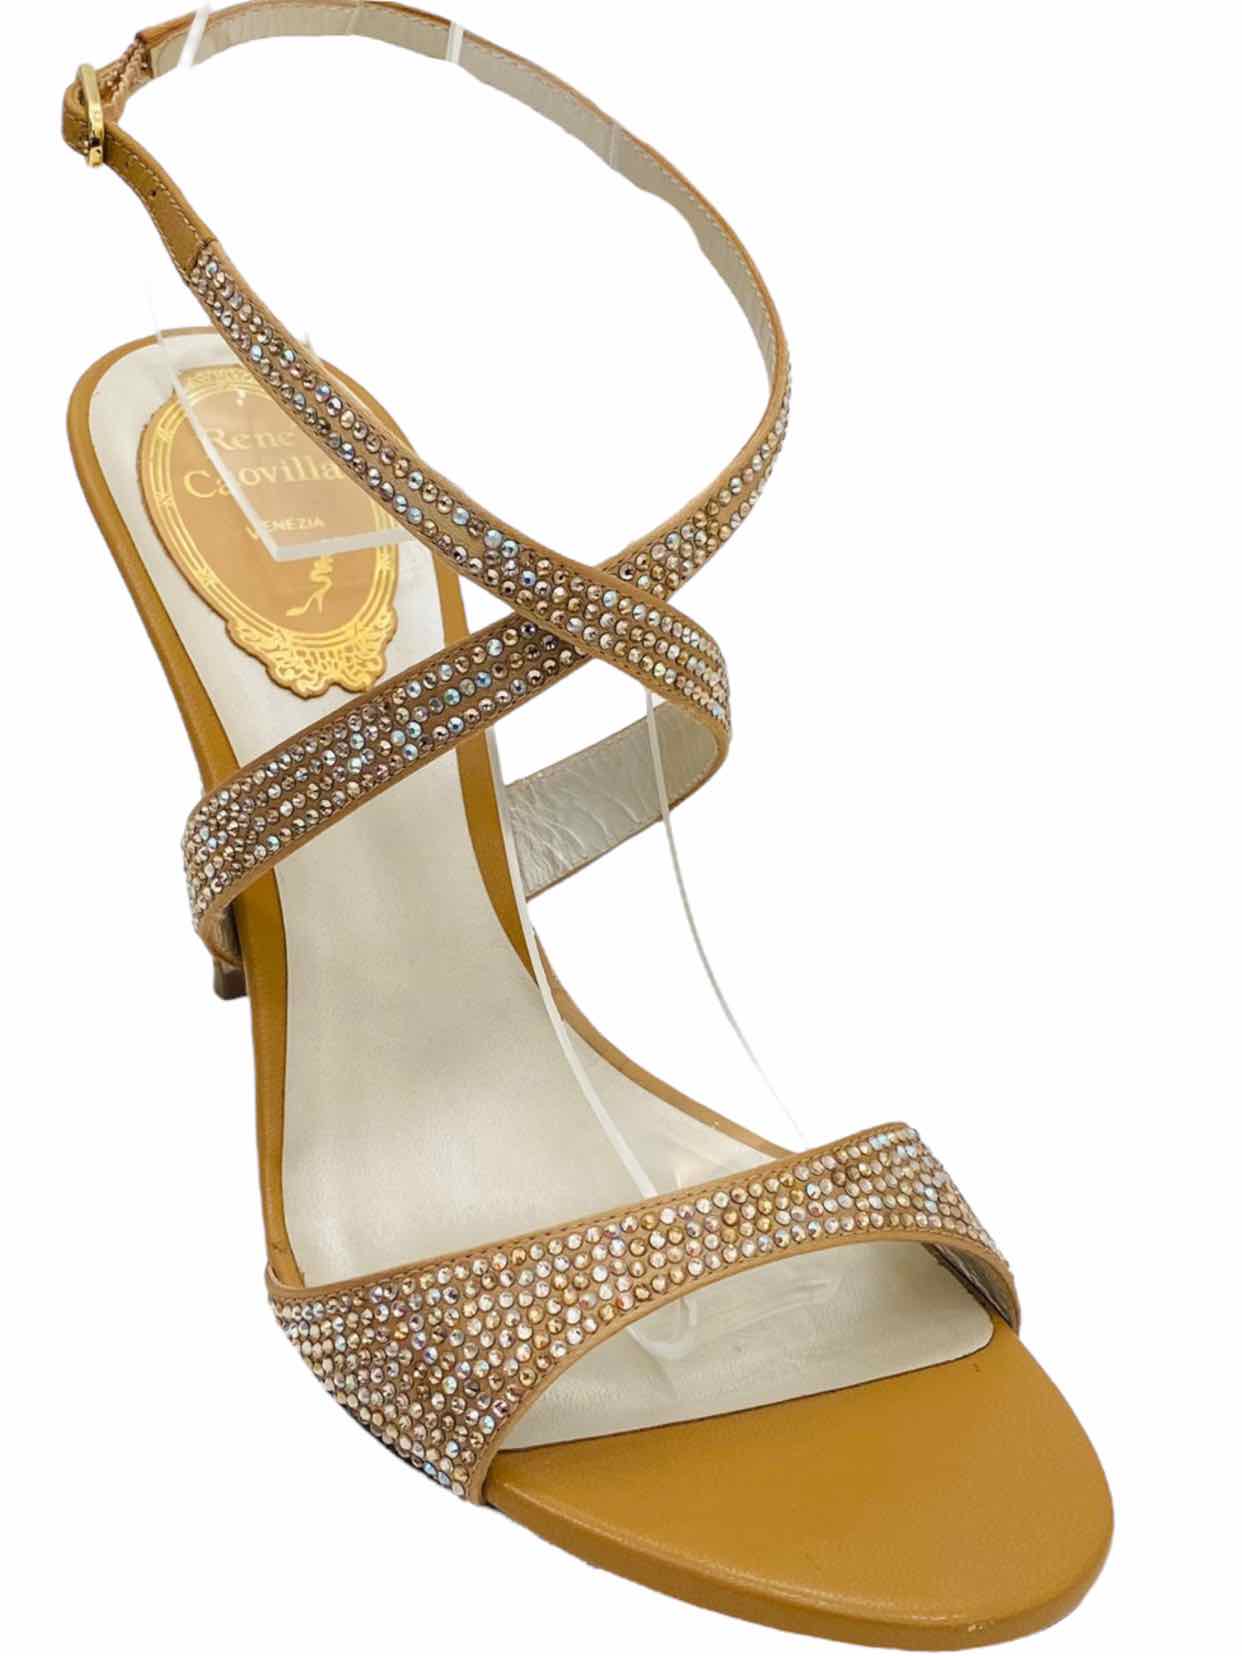 RENE CAOVILLA Beige Embellished Heeled Sandals